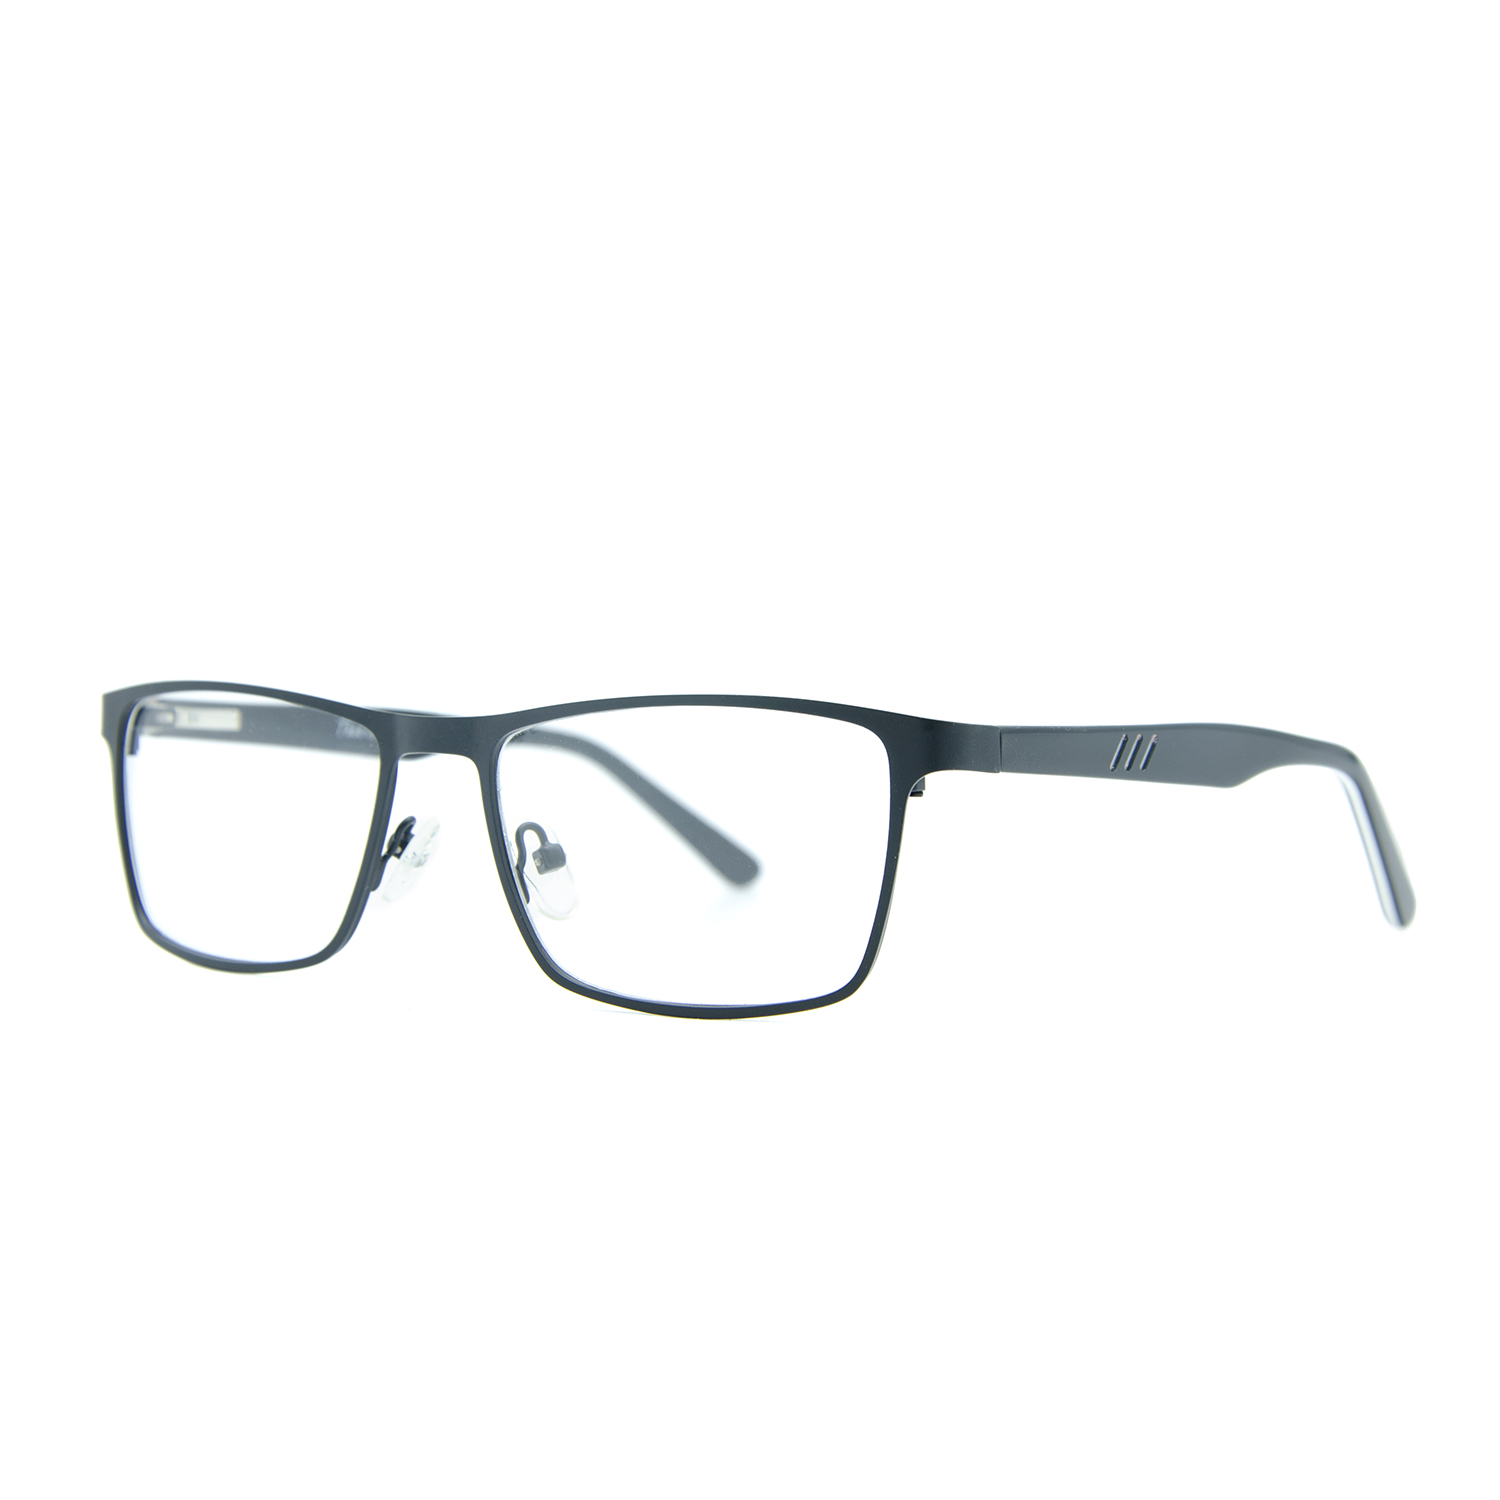 فریم عینک طبی ام اند او مدل Lyro-c2 -  - 2